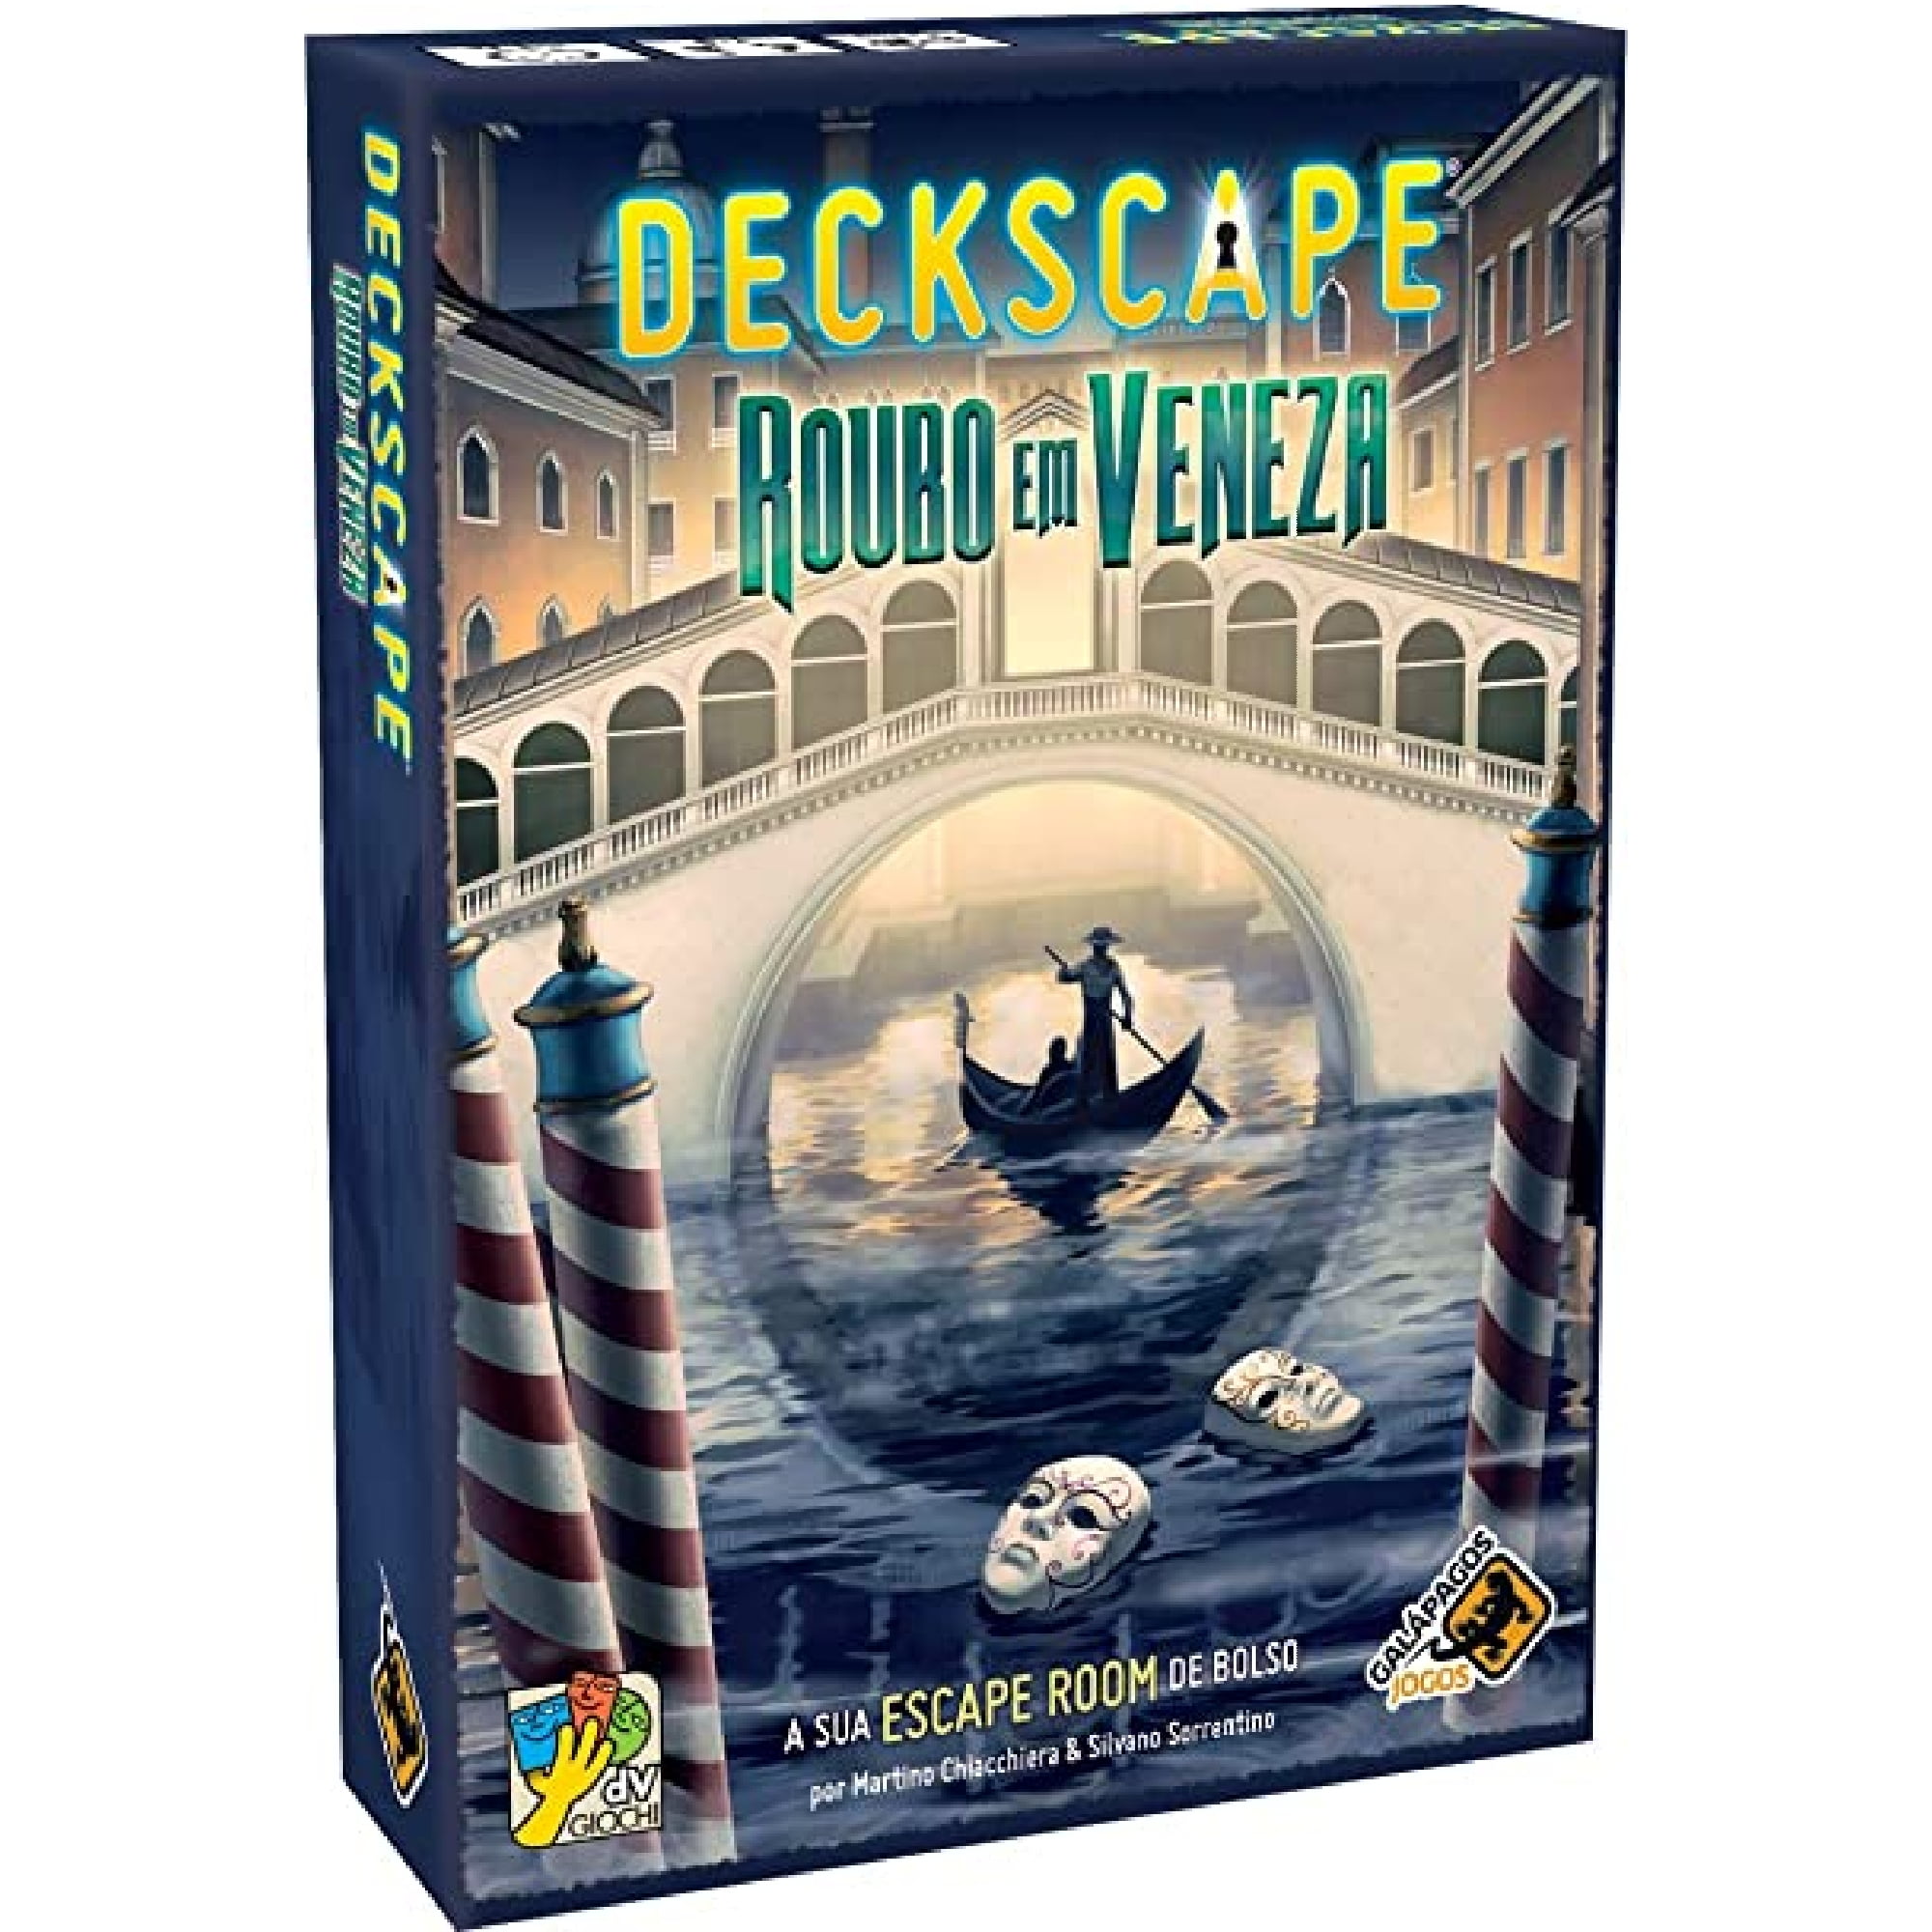 Deckscape Roubo em Veneza